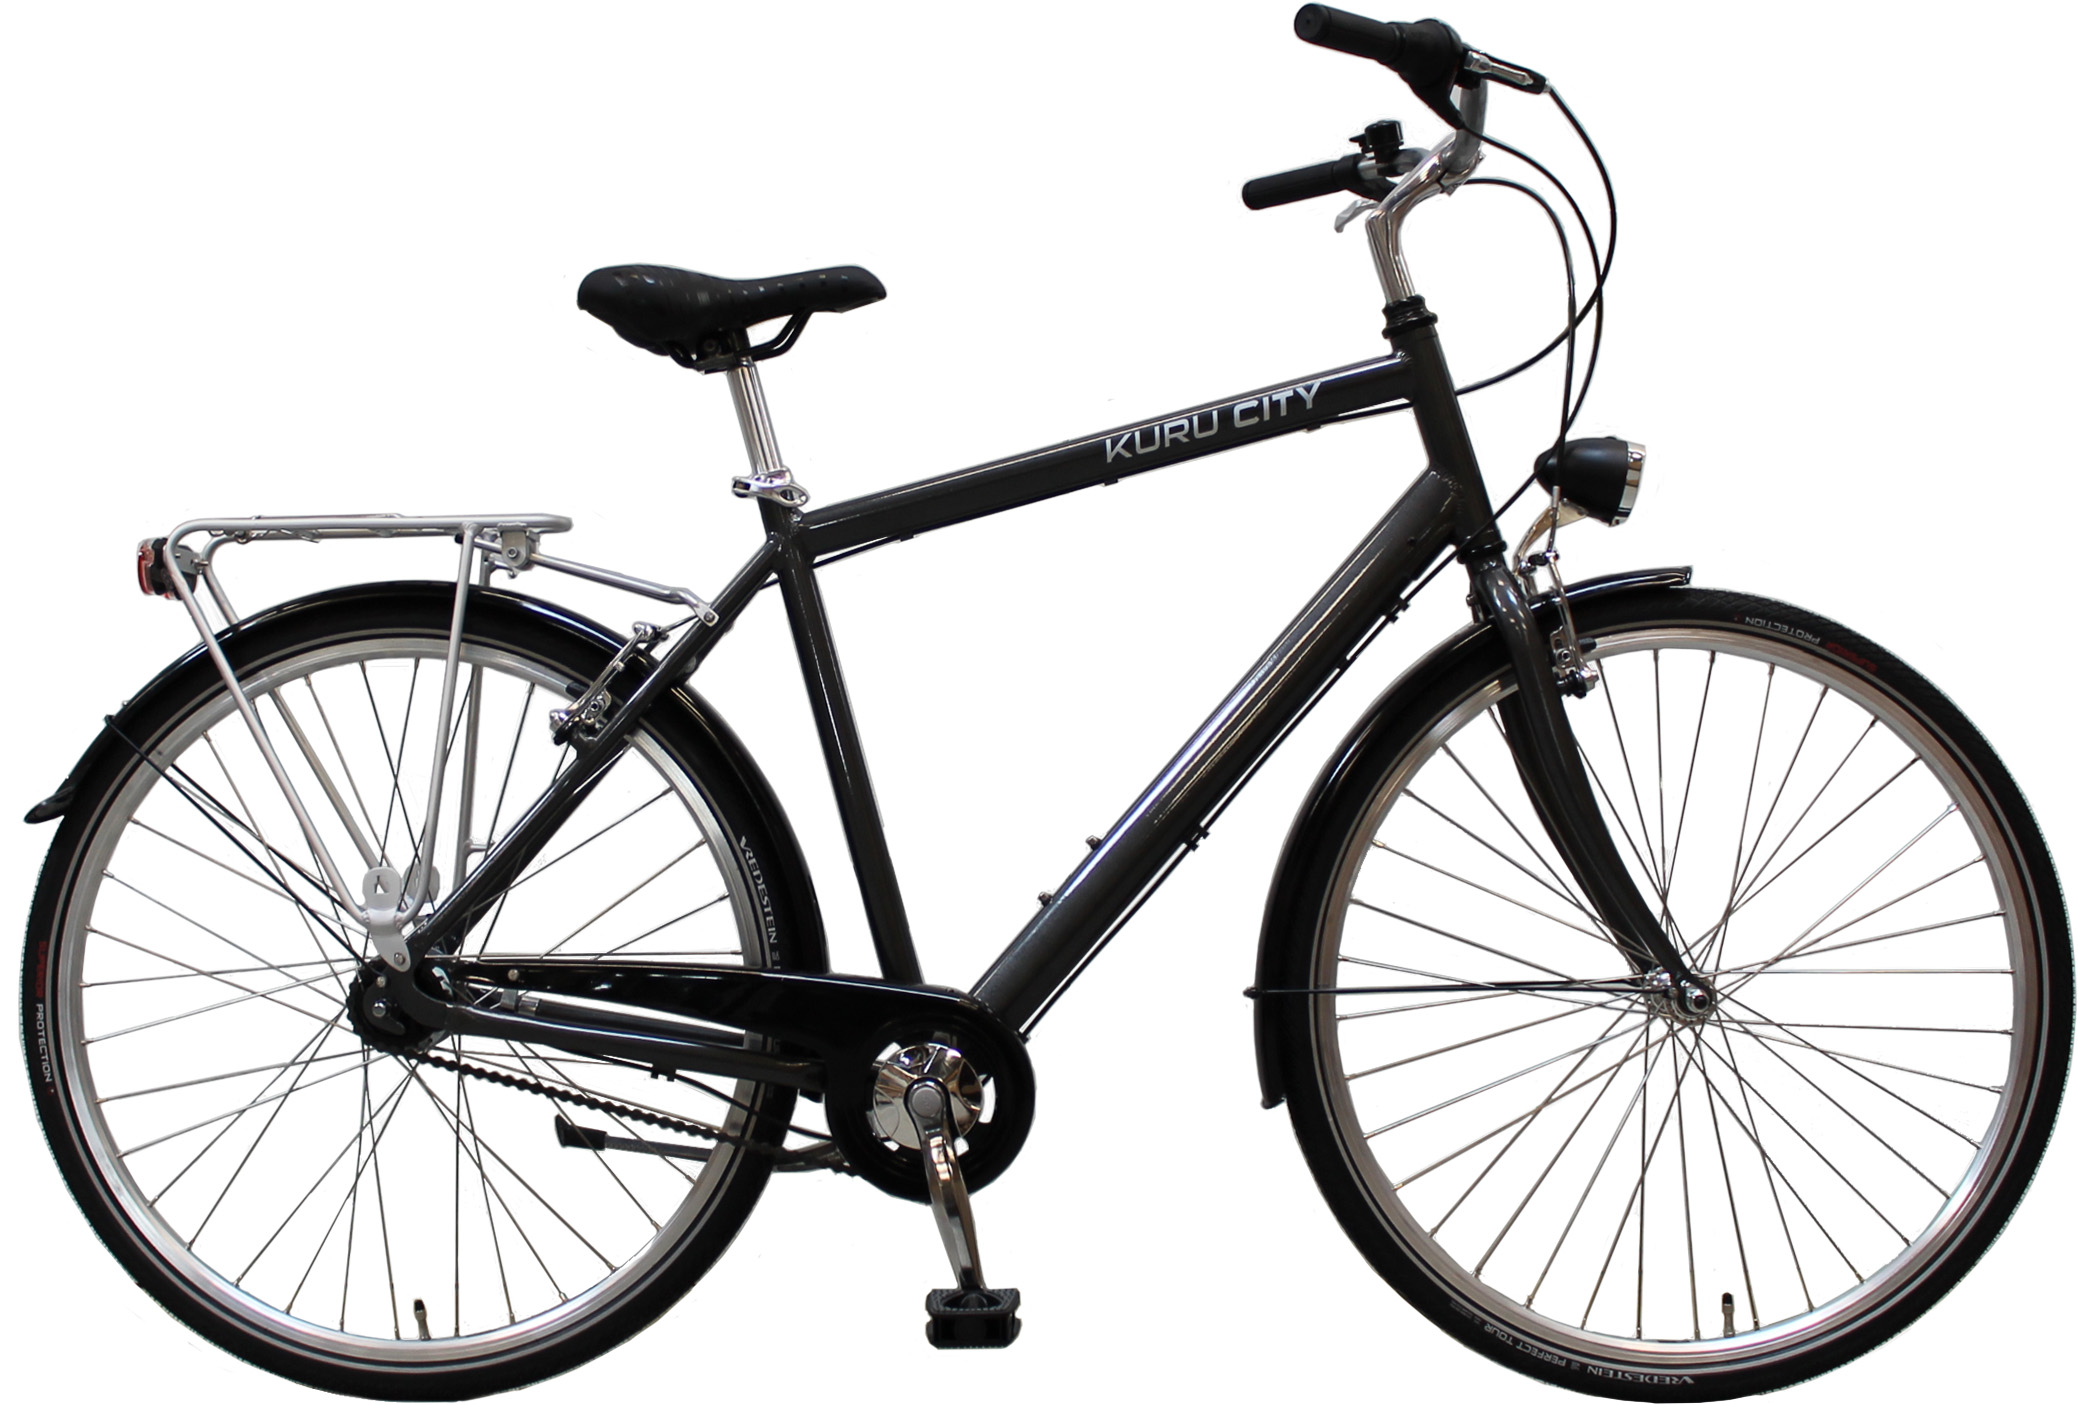 KURU CITY miesten hybrid polkupyörä jalkajarruilla on täydellisesti vausteltu monenlaiseen ajamiseen!